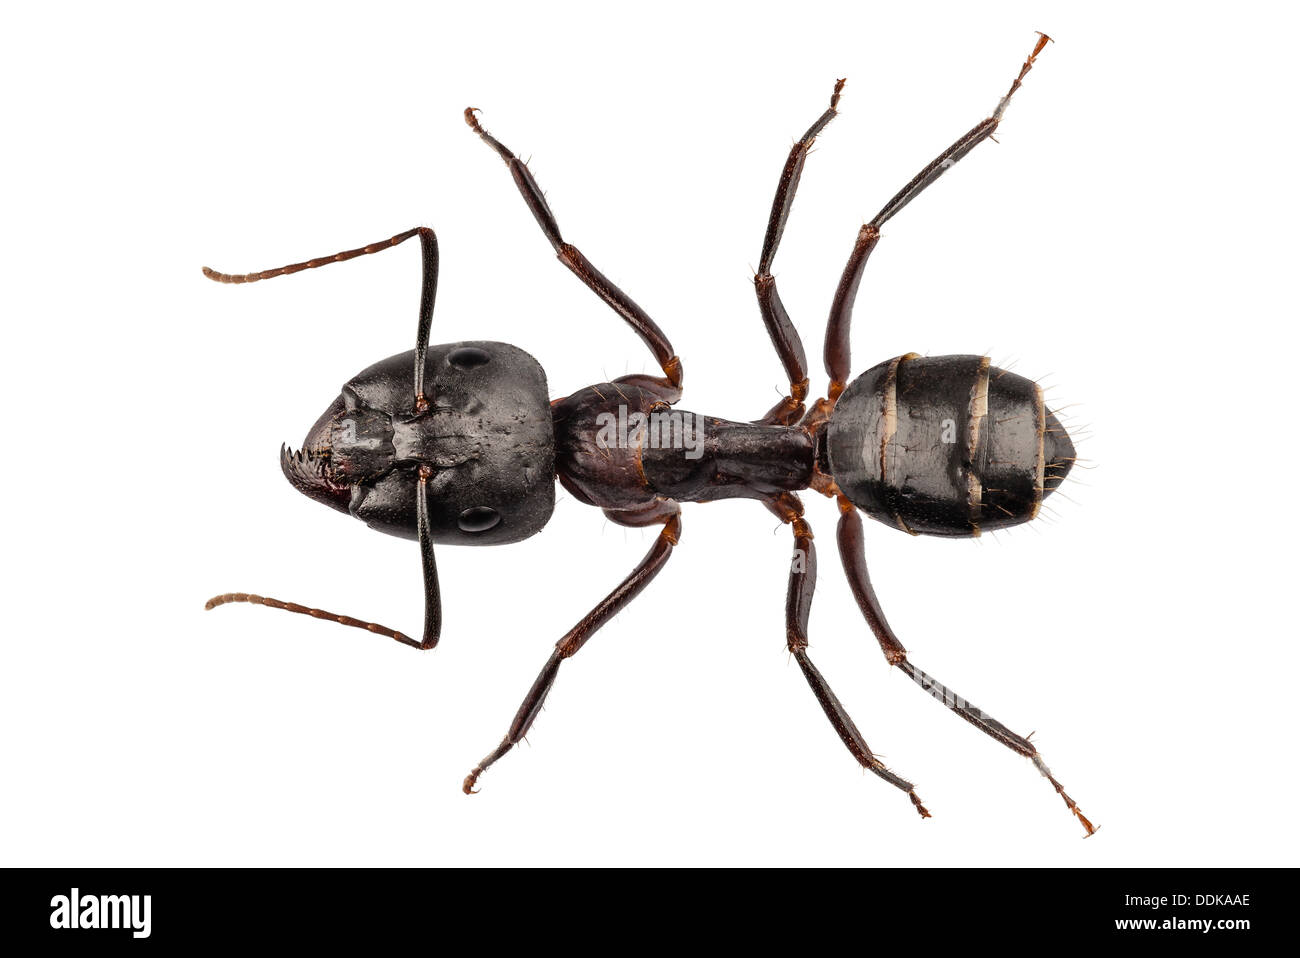 Carpenter Ant species camponotus vagus Stock Photo